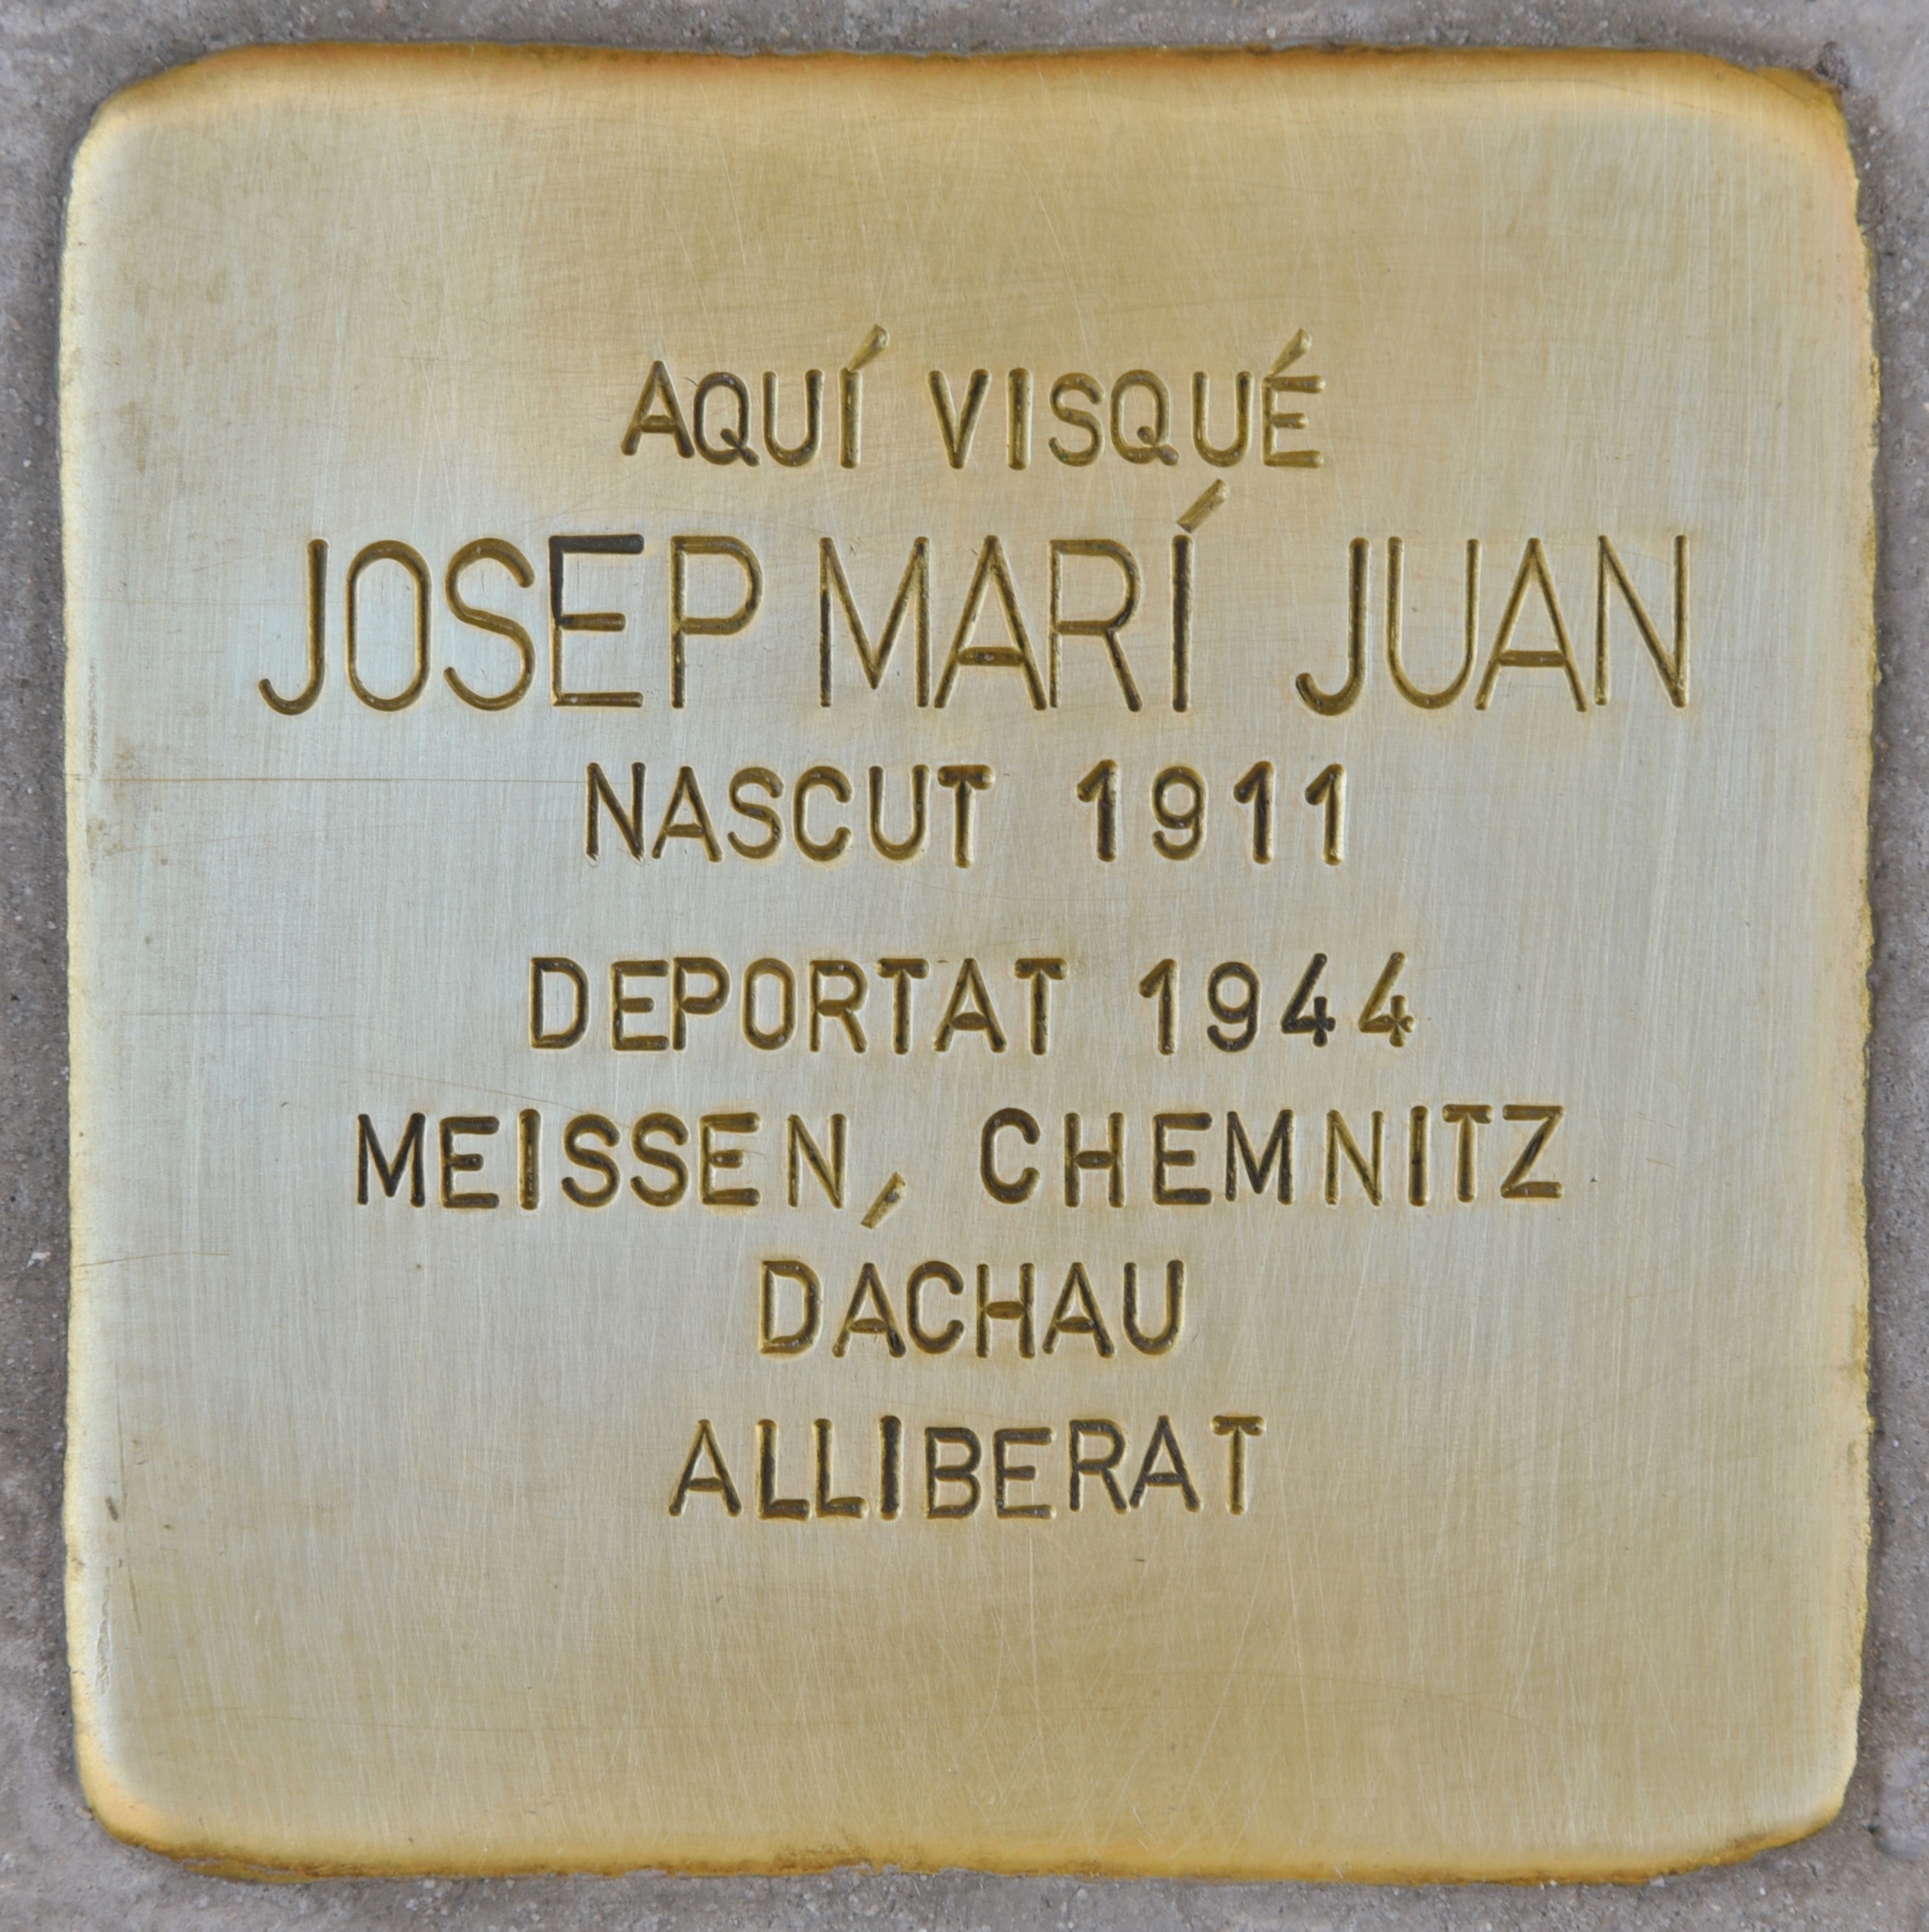 Josep Marí Juan